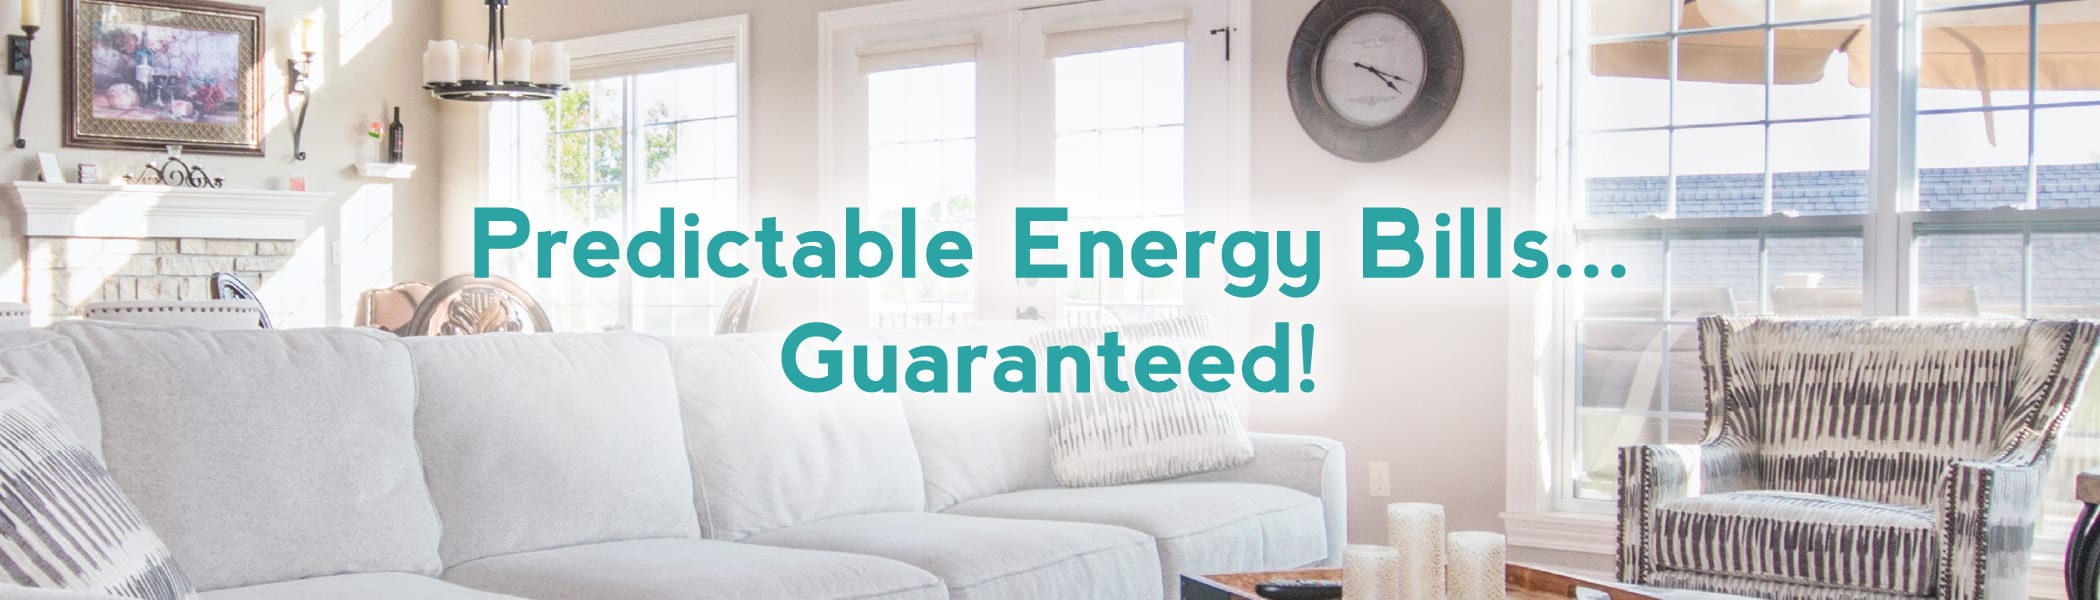 Predictable Energy Bills - Guaranteed!